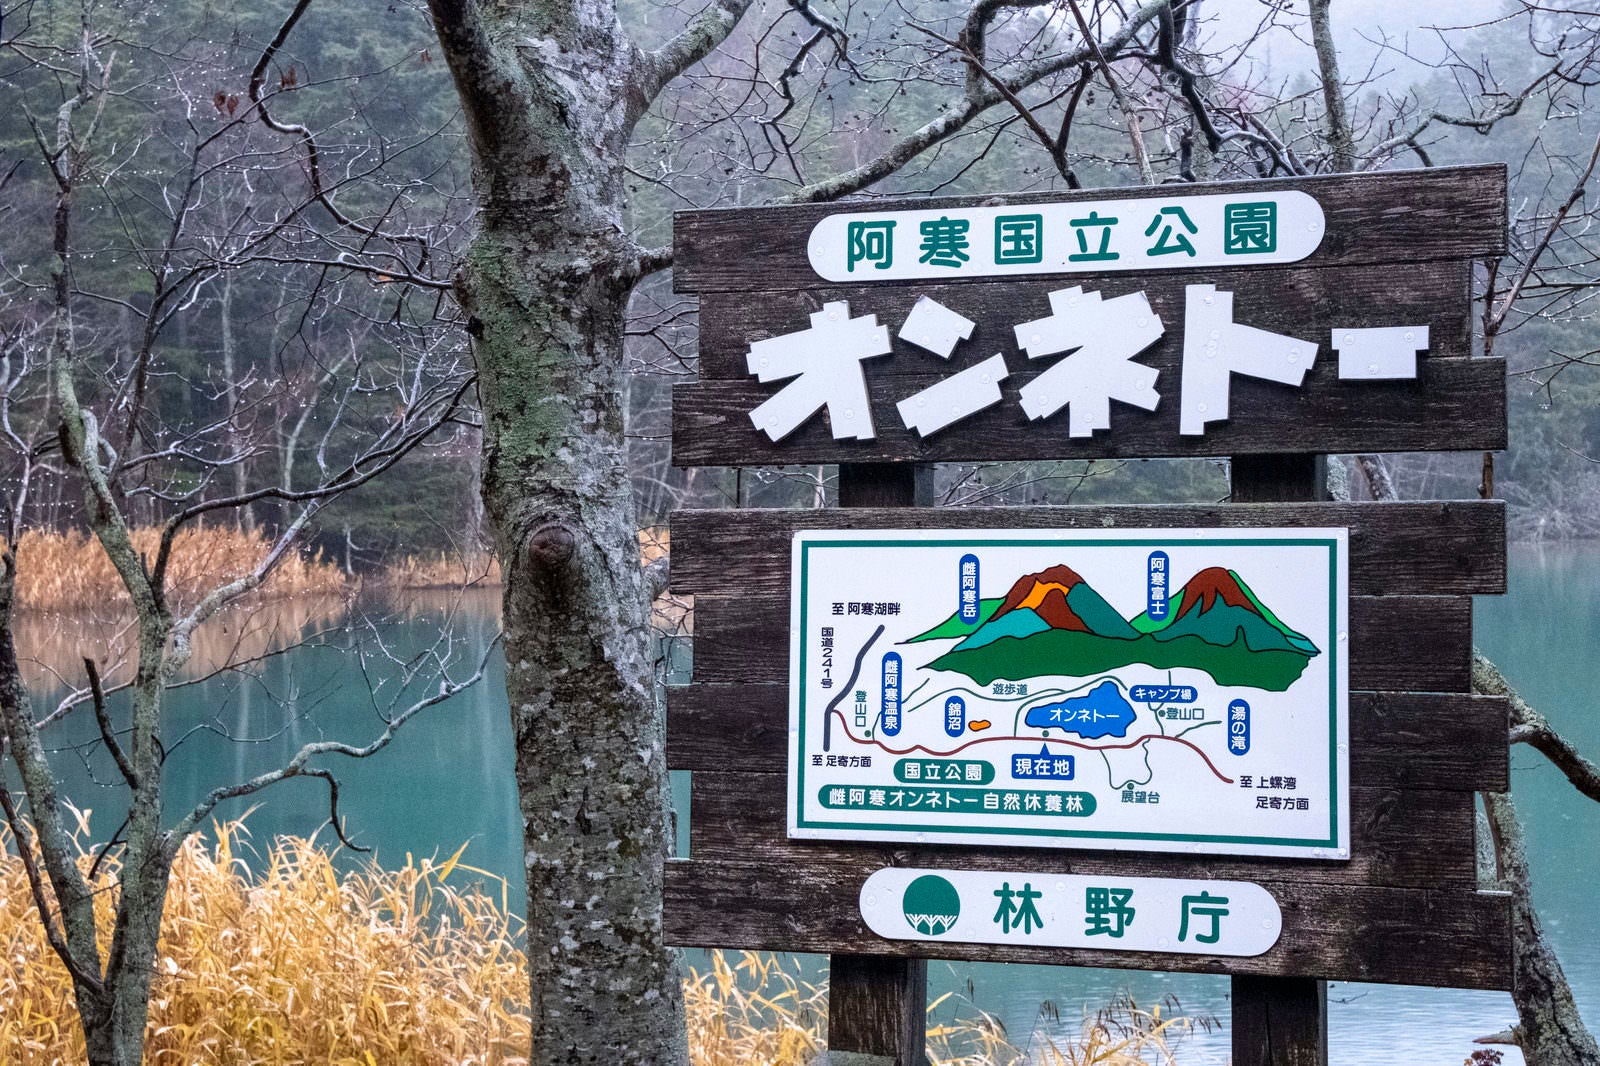 「北海道・阿寒国立公園オンネトーと書かれた案内板」の写真